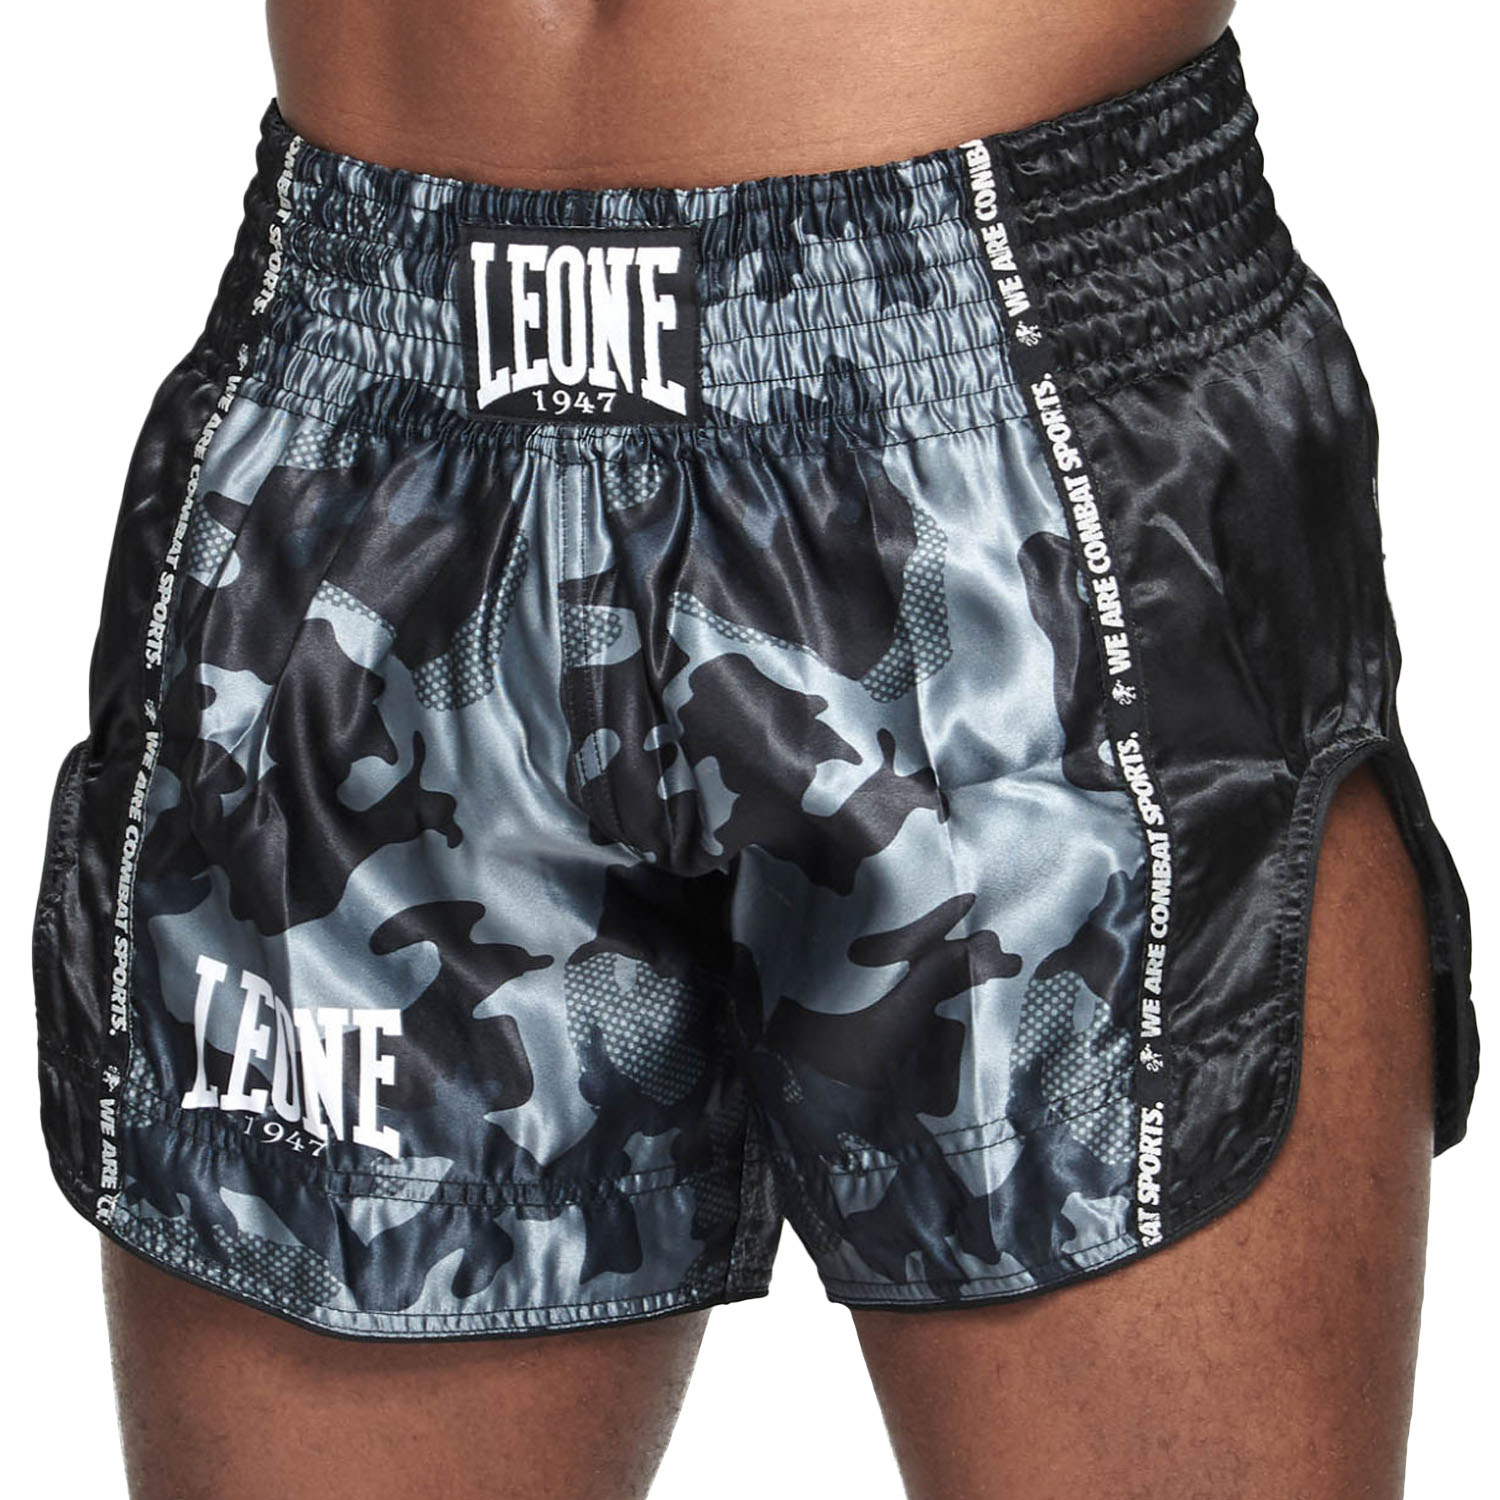 LEONE Muay Thai Shorts, AB961, camo-grau